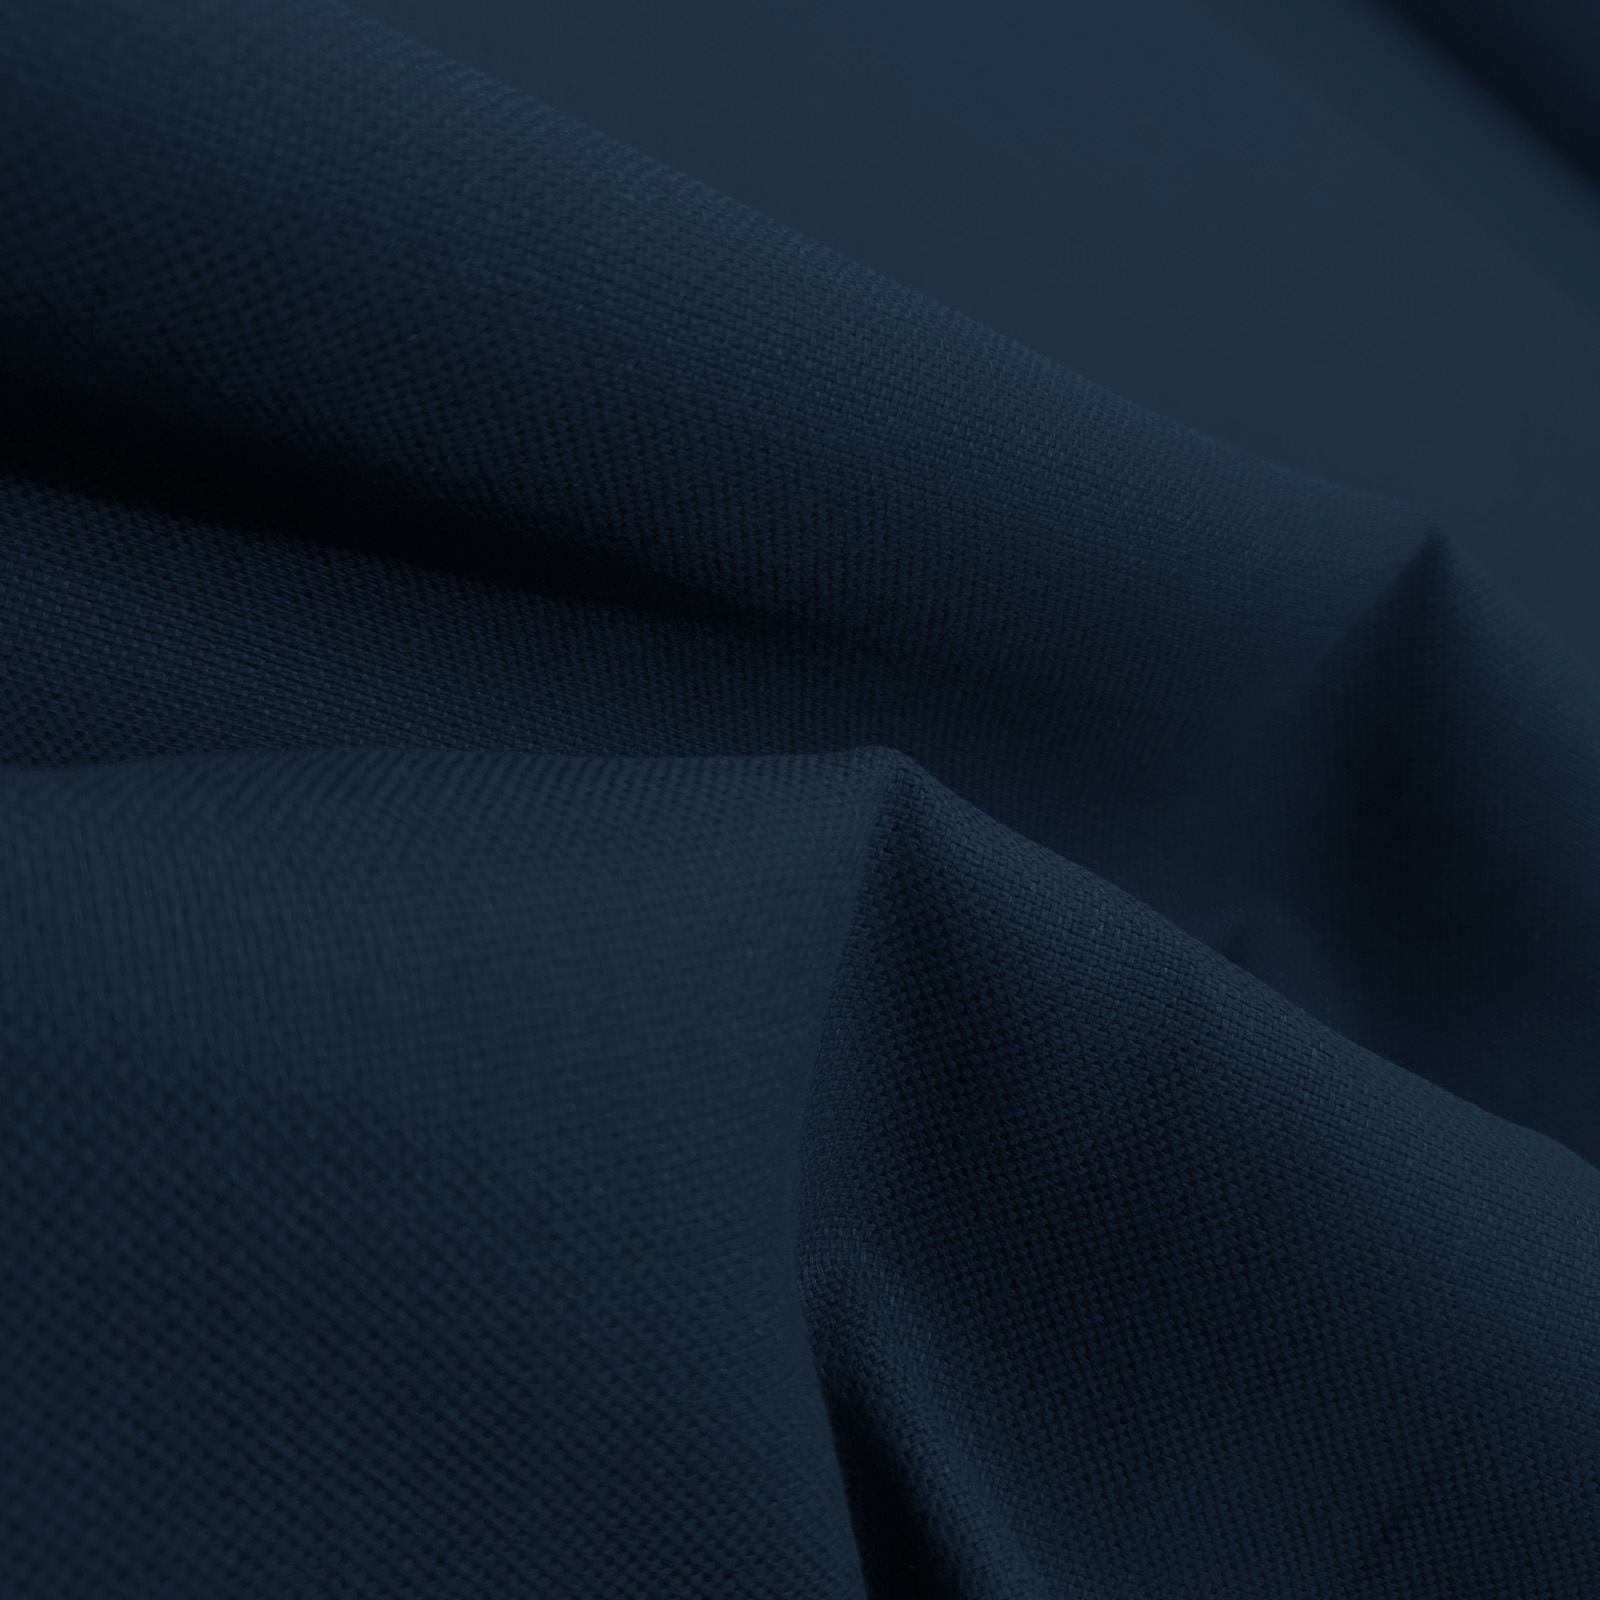 Rustico linen fabric - "navy"